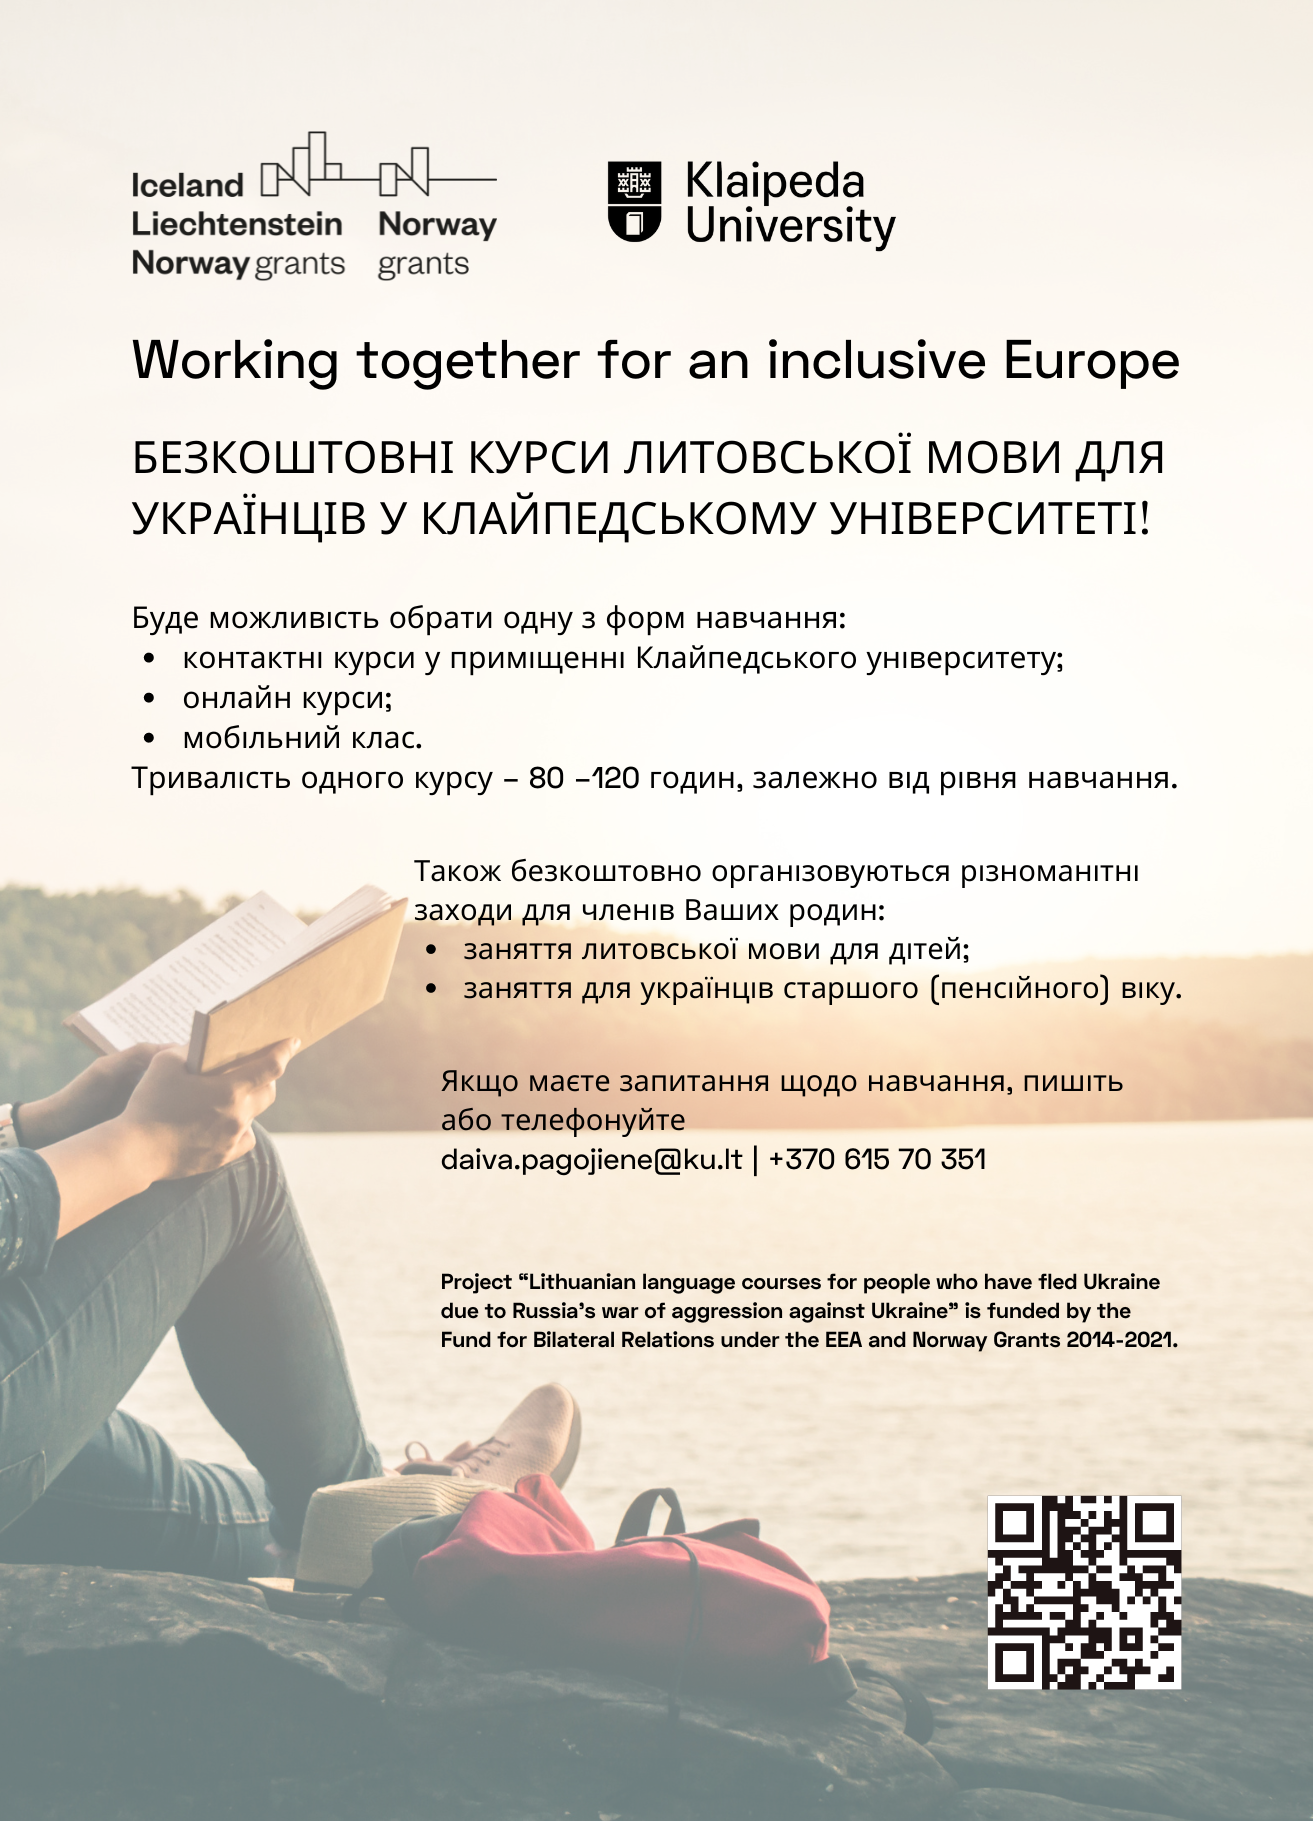 Lietuvių kalbos kursai, skirti Ukrainos karo pabėgėliams